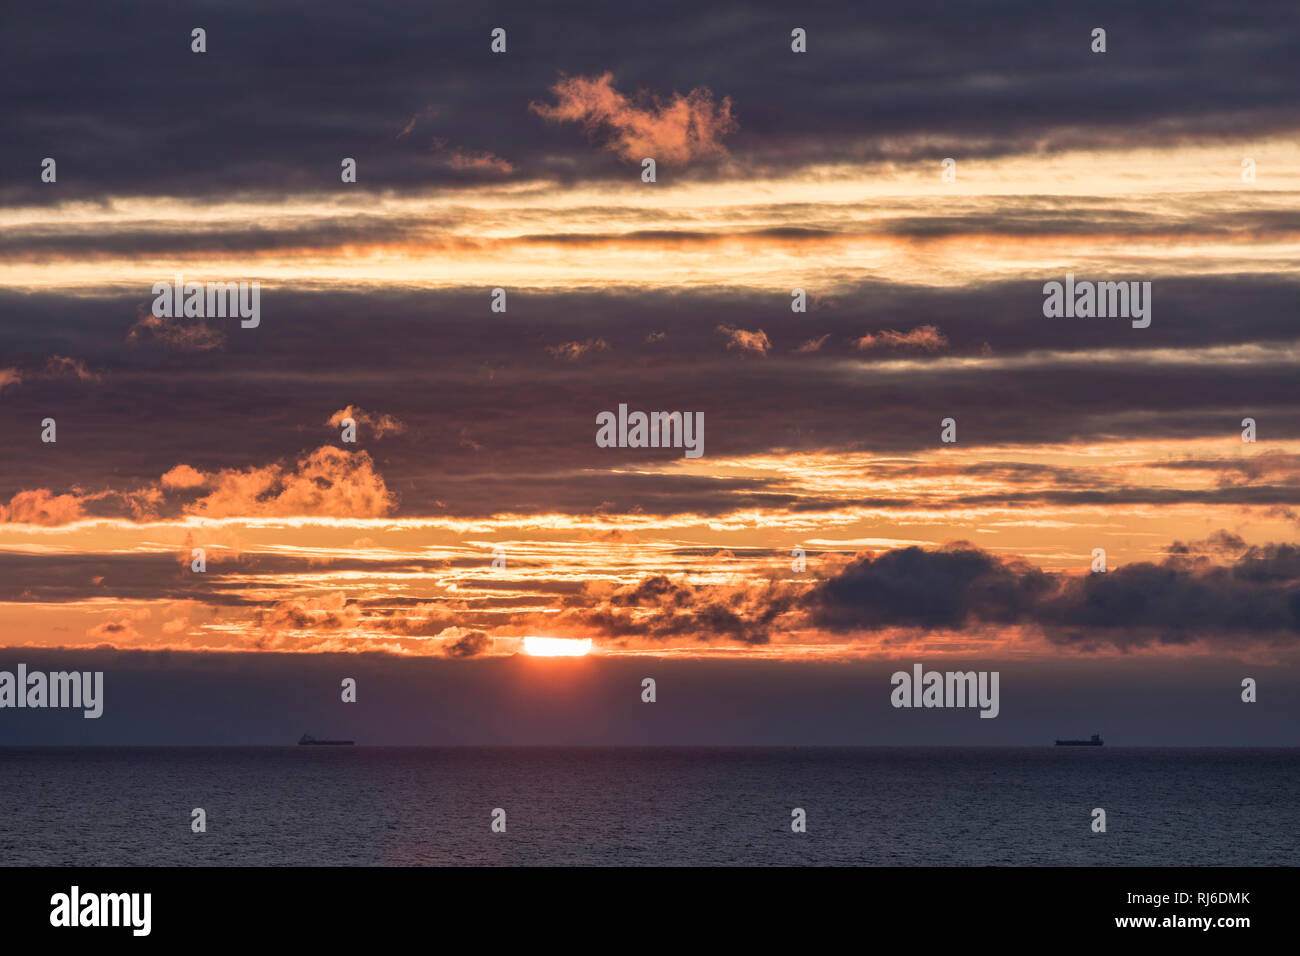 zwei Schiffe am Horizont mit untergehender Sonne Stock Photo